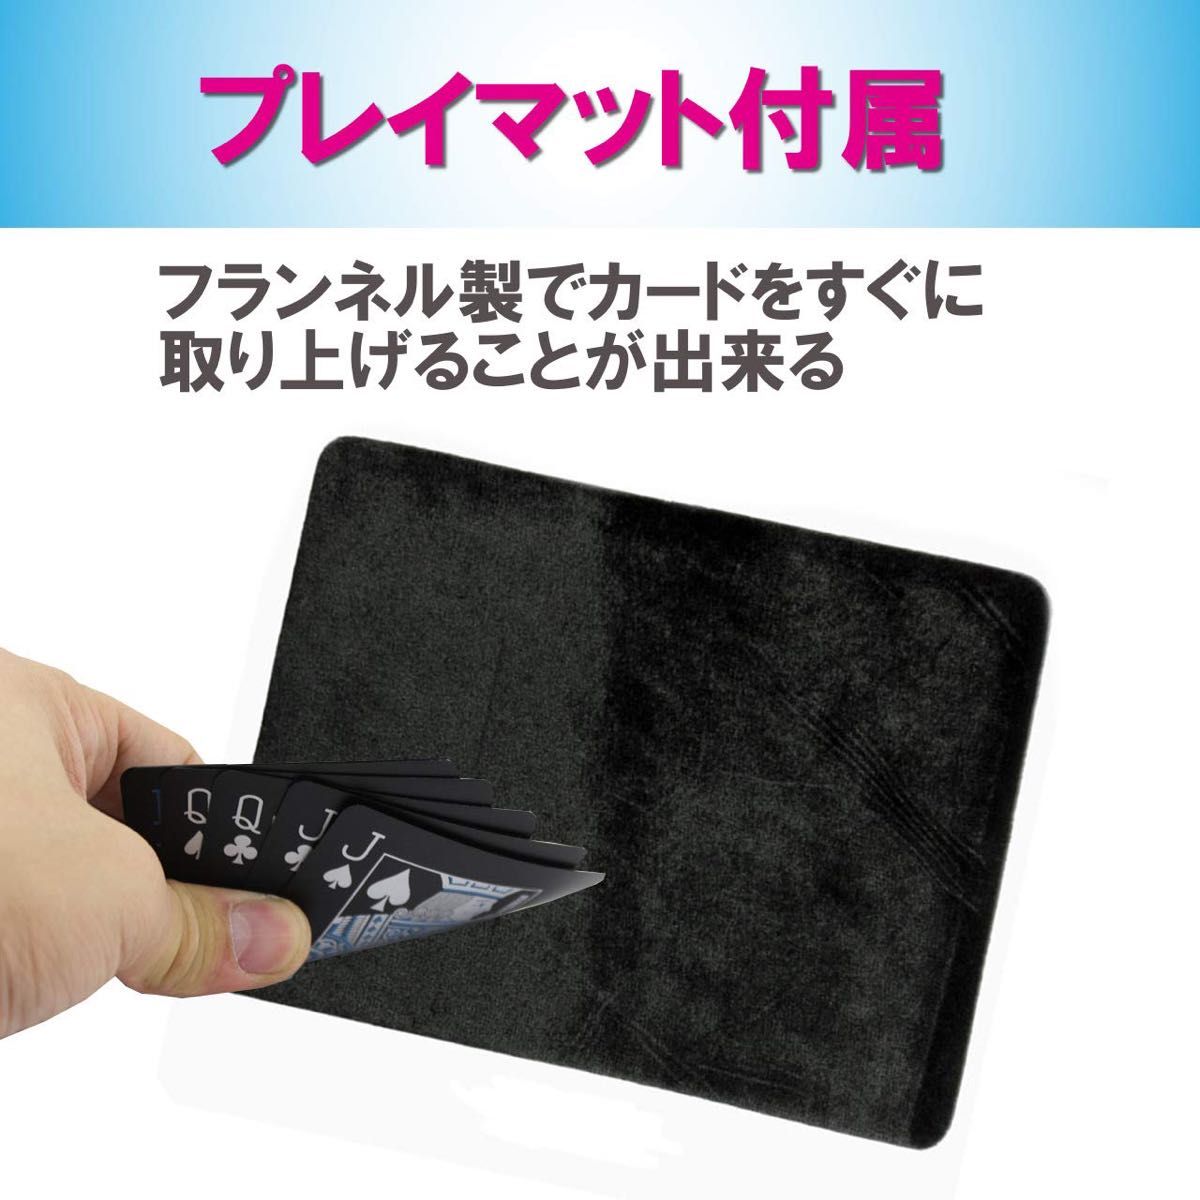 Felimoa トランプカード プラスチック 2種 ホログラム調 手品 マジック プレイマット 3点セット  カードゲーム